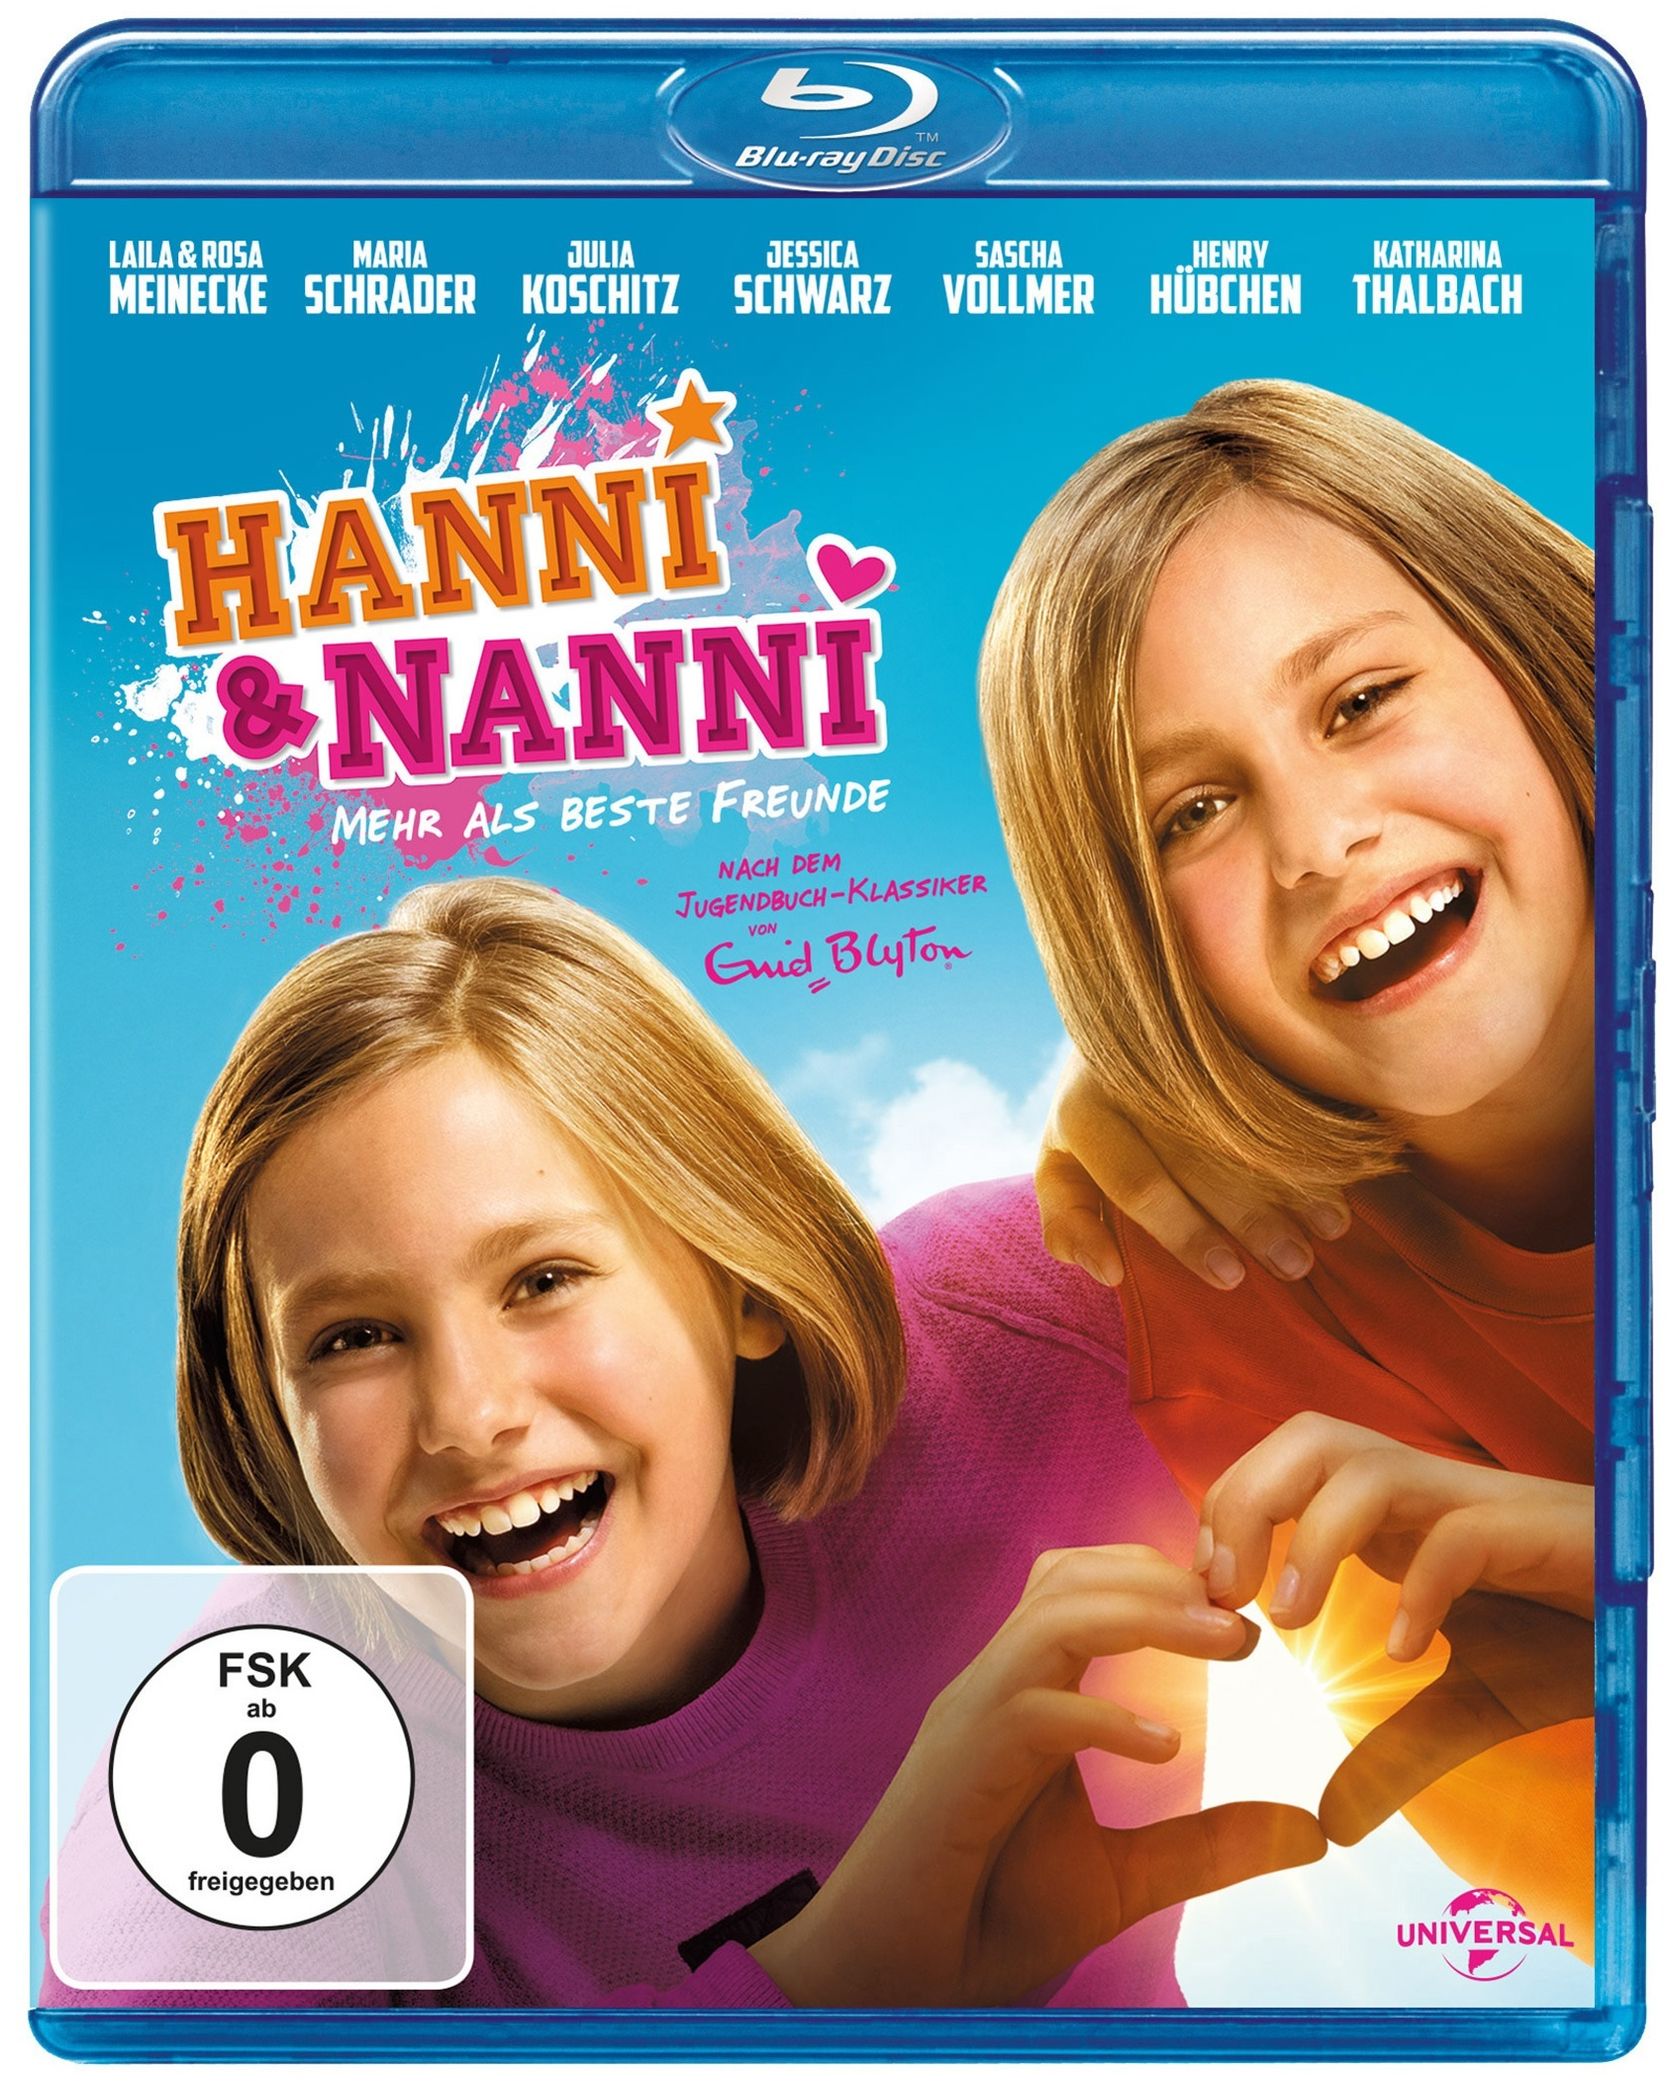 Hanni und Nanni - Mehr als beste Freunde Blu-ray | Weltbild.at